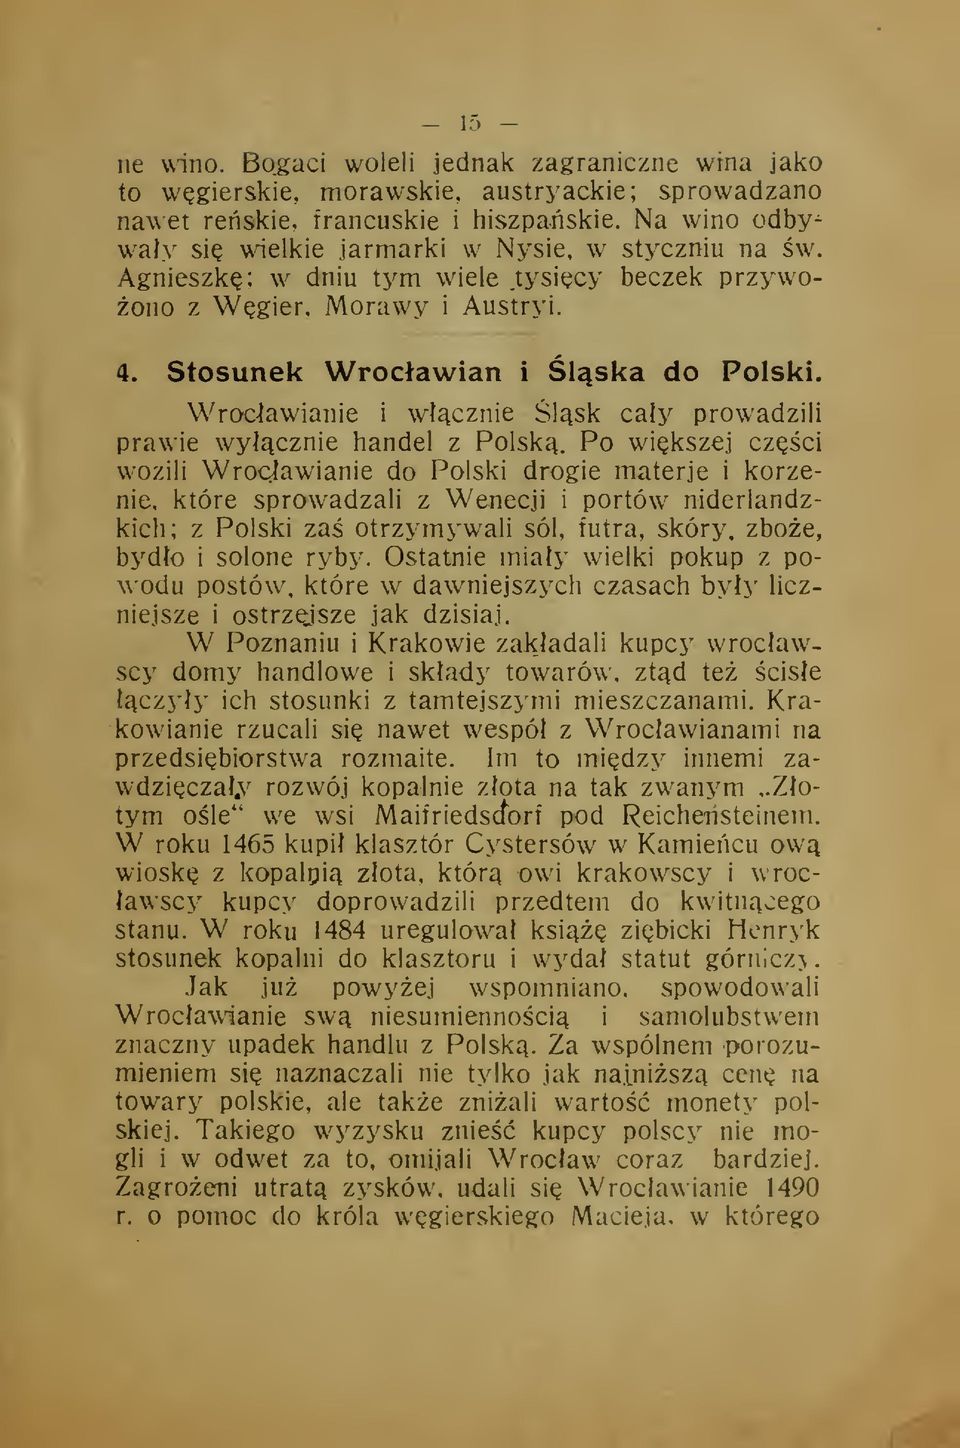 W Poznaniu i Wroc-lawianie i wcznie lsk cay prowadzili prawie wycznie handel z Polsk.